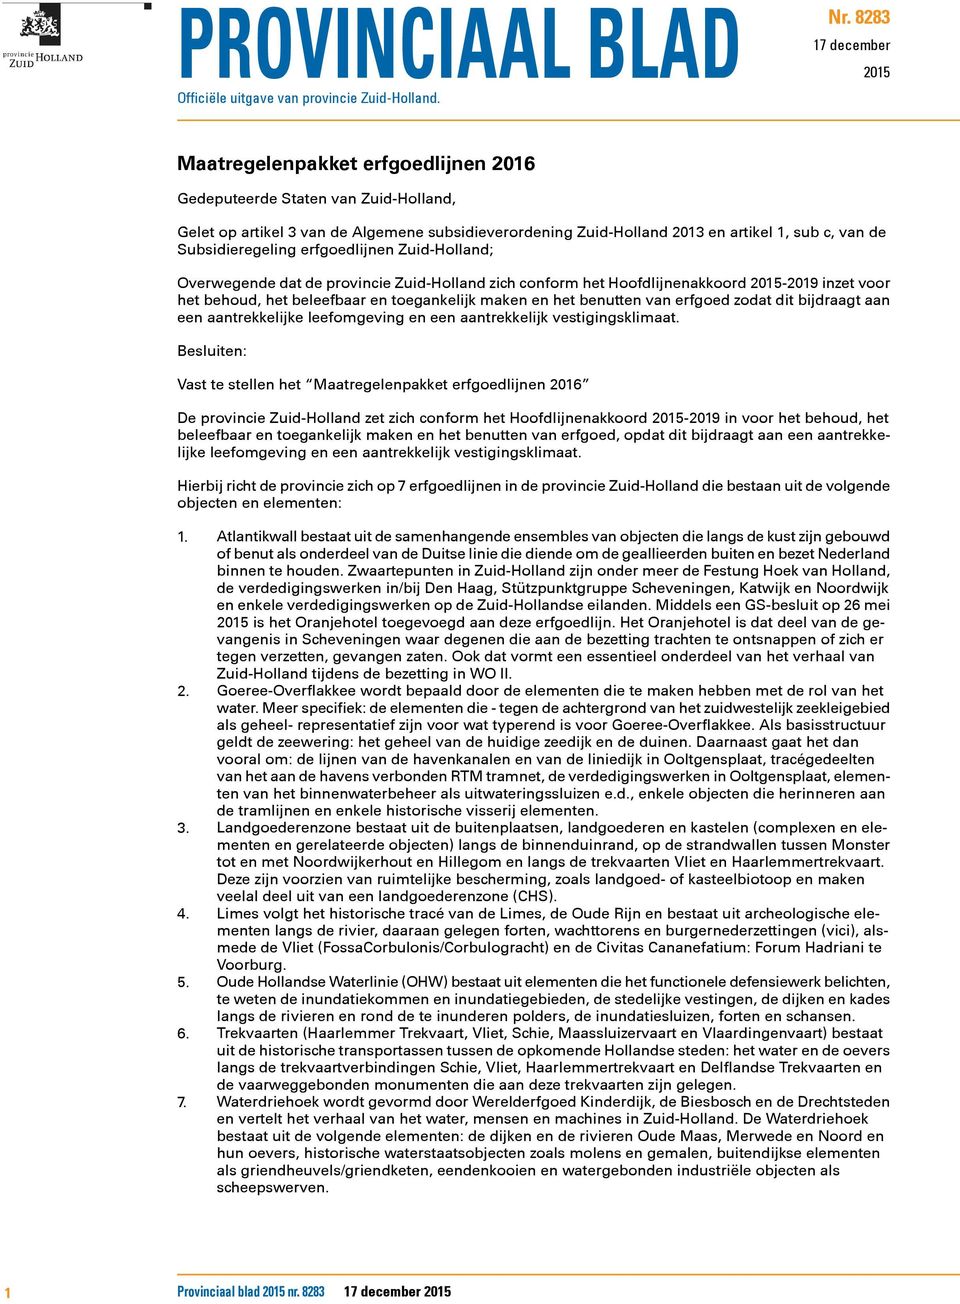 Subsidieregeling erfgoedlijnen Zuid-Holland; Overwegende dat de provincie Zuid-Holland zich conform het Hoofdlijnenakkoord 2015-2019 inzet voor het behoud, het beleefbaar en toegankelijk maken en het